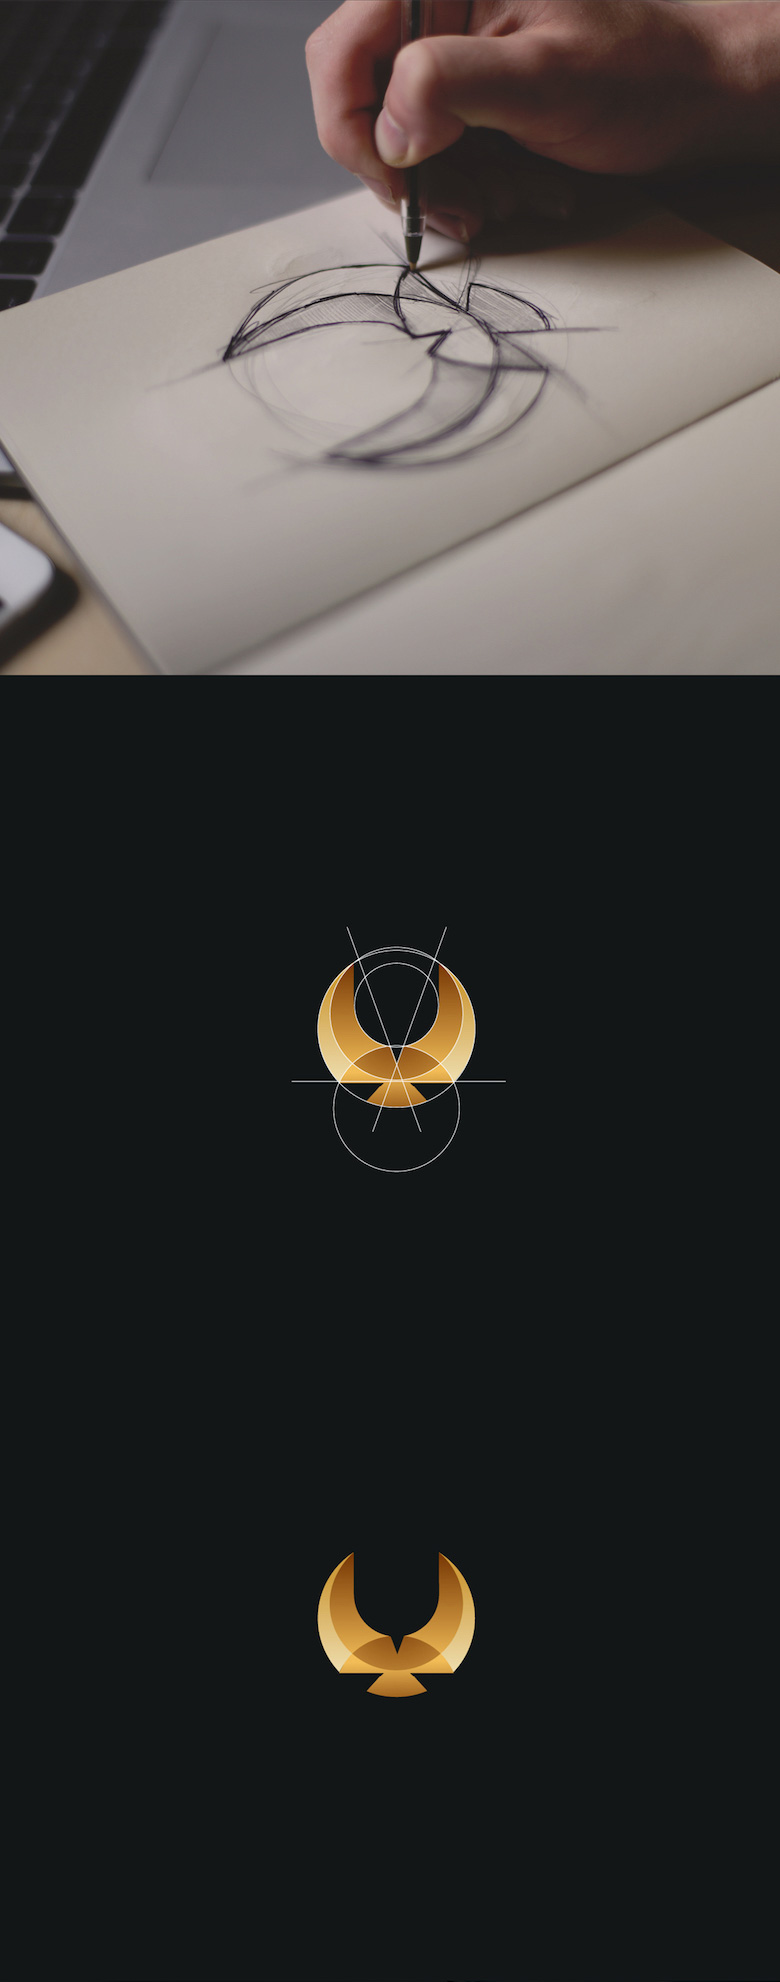 Projektowanie logo w oparciu o złotą proporcję